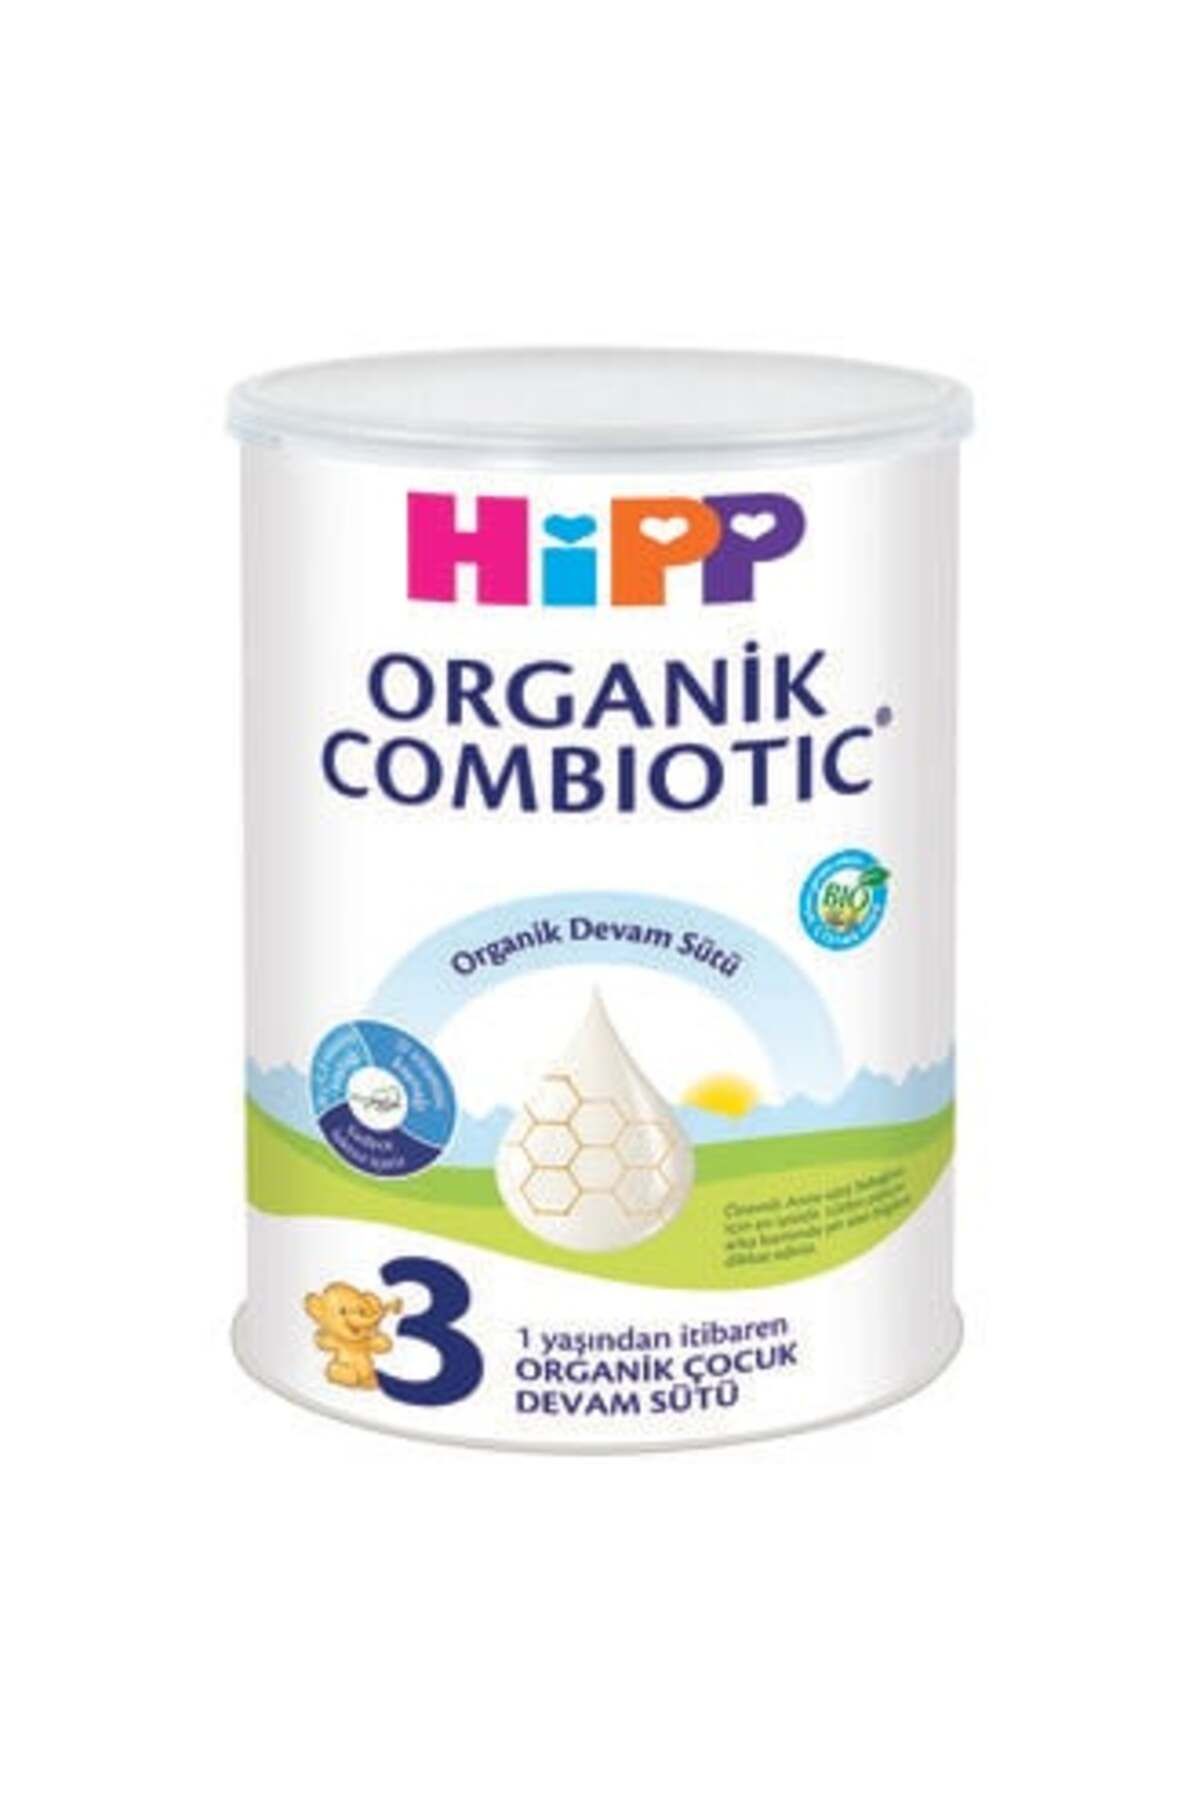 Hipp 3 Organik Combiotic Devam Sütü 350 G ( 1 ADET )